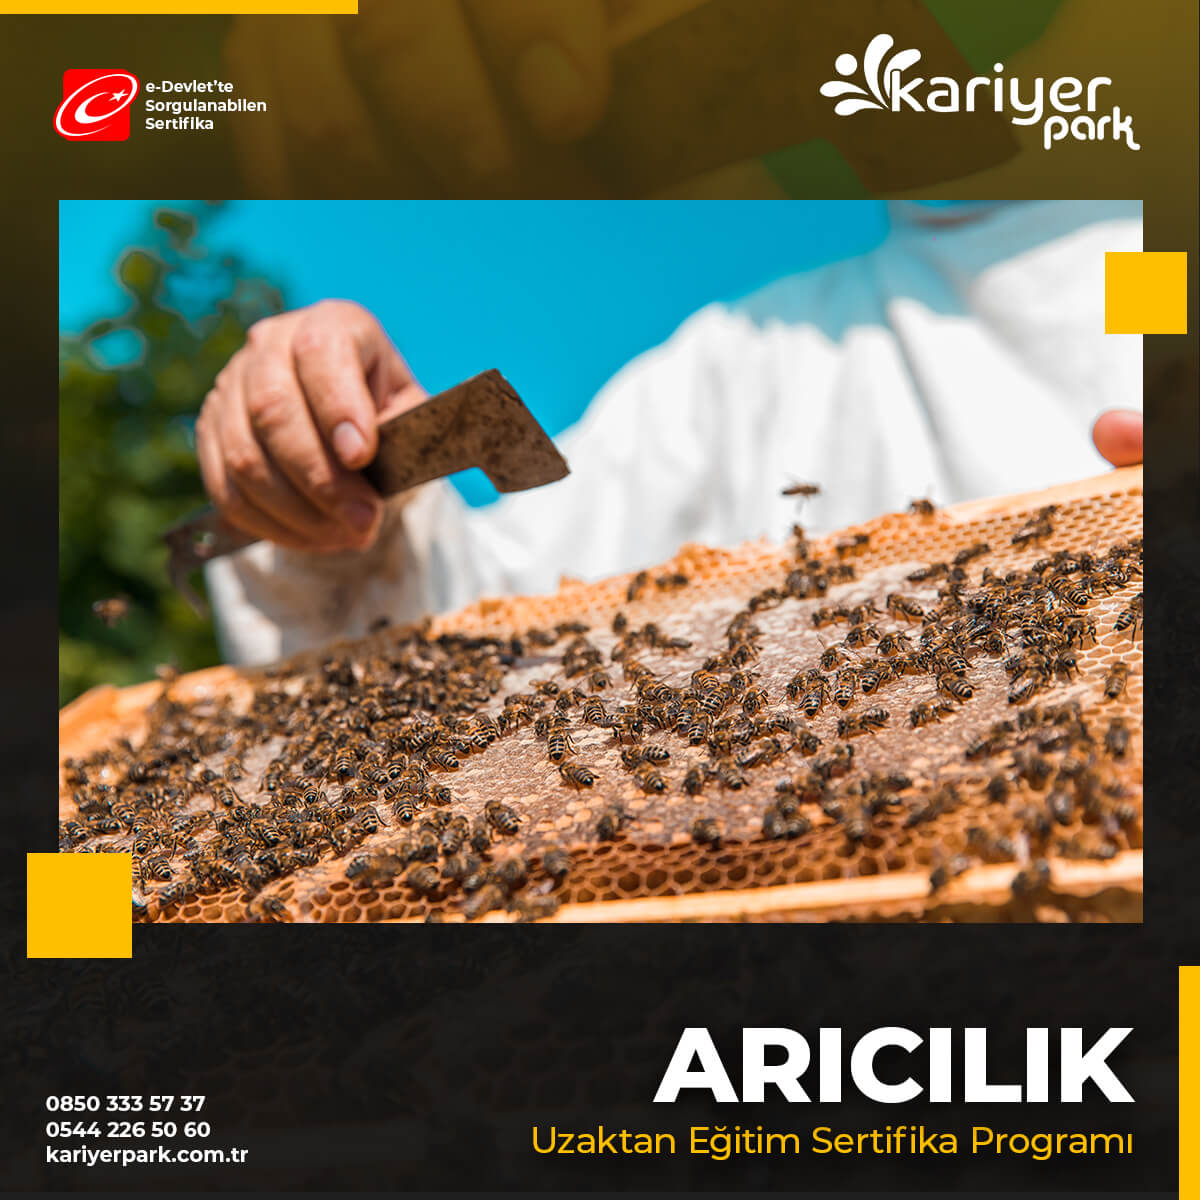 Arıcılık Eğitimi Sertifika Programı kapsamında arı yetiştiriciliği kursunu tamamlayan arıcılara sertifikaları dağıtılacaktır.